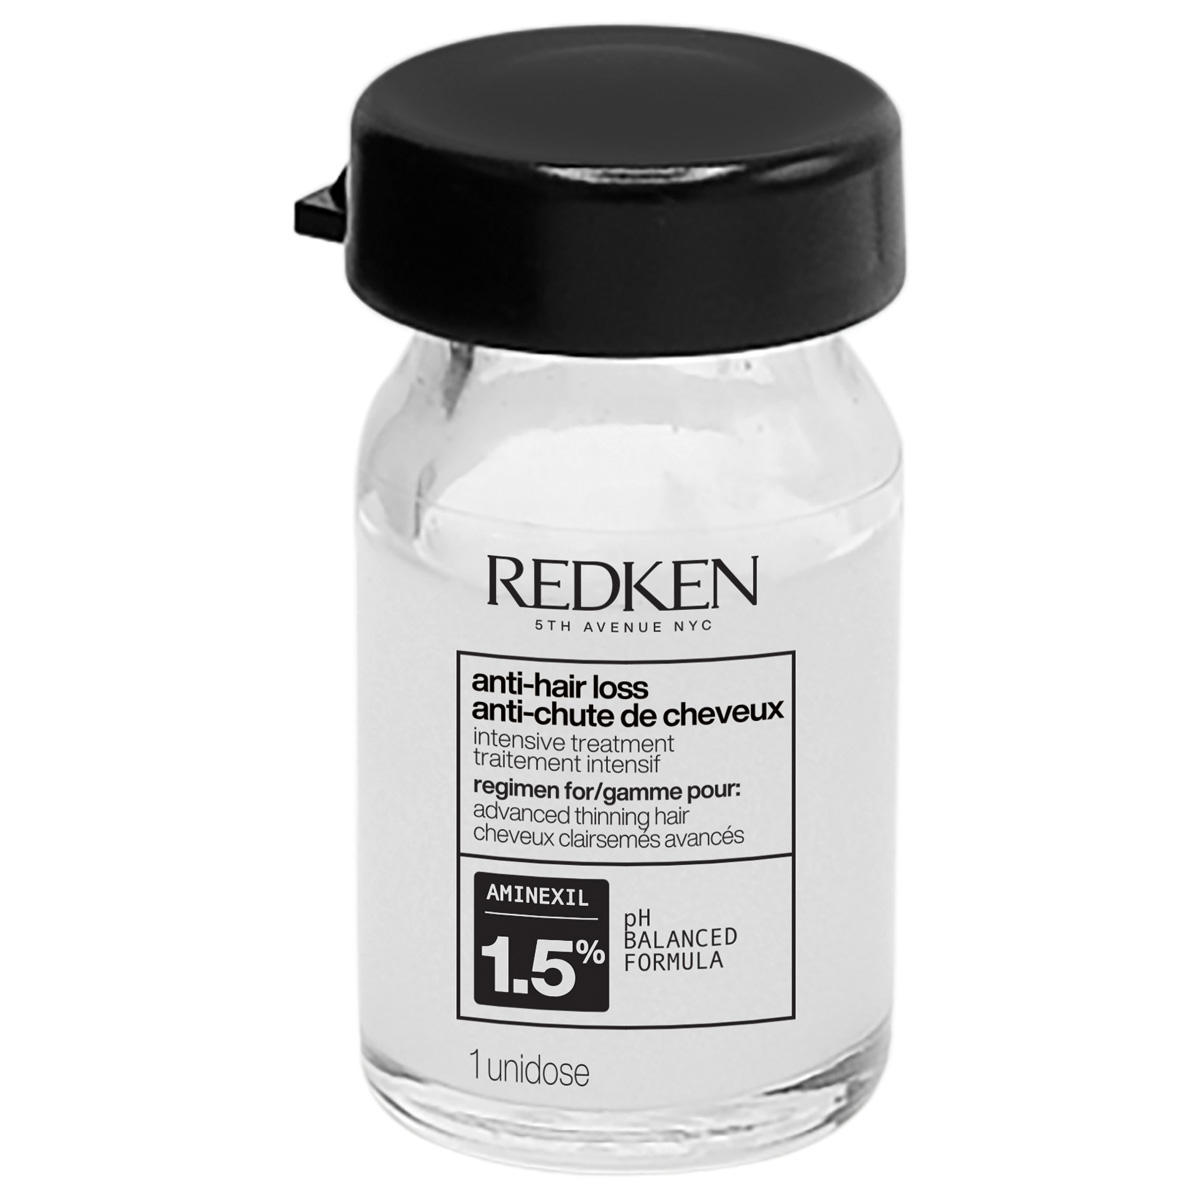 Redken cerafill maximize anti-hair loss intensive treatment Confezione con 10 x 6 ml - 2